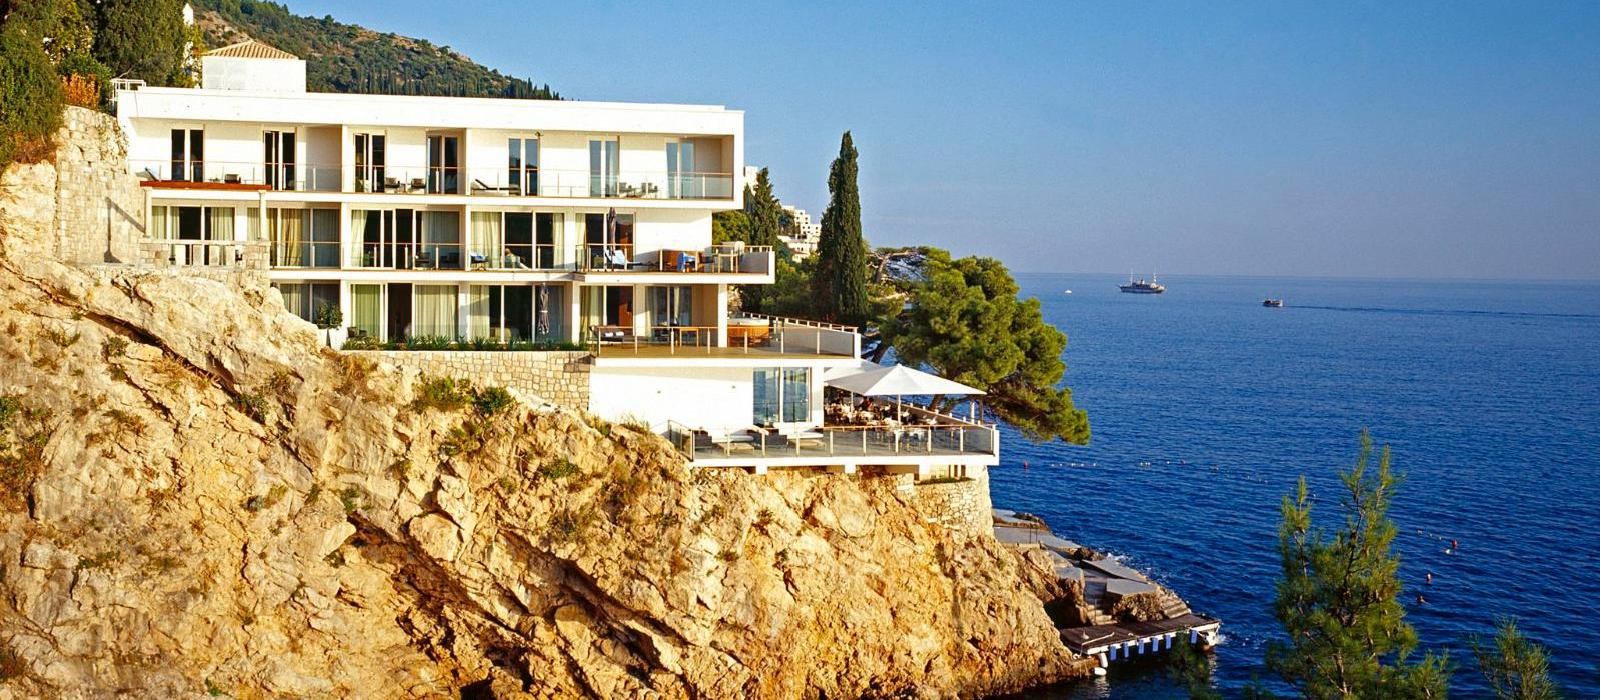 杜布罗夫尼克别墅酒店(Villa Dubrovnik) 图片  www.lhw.cn